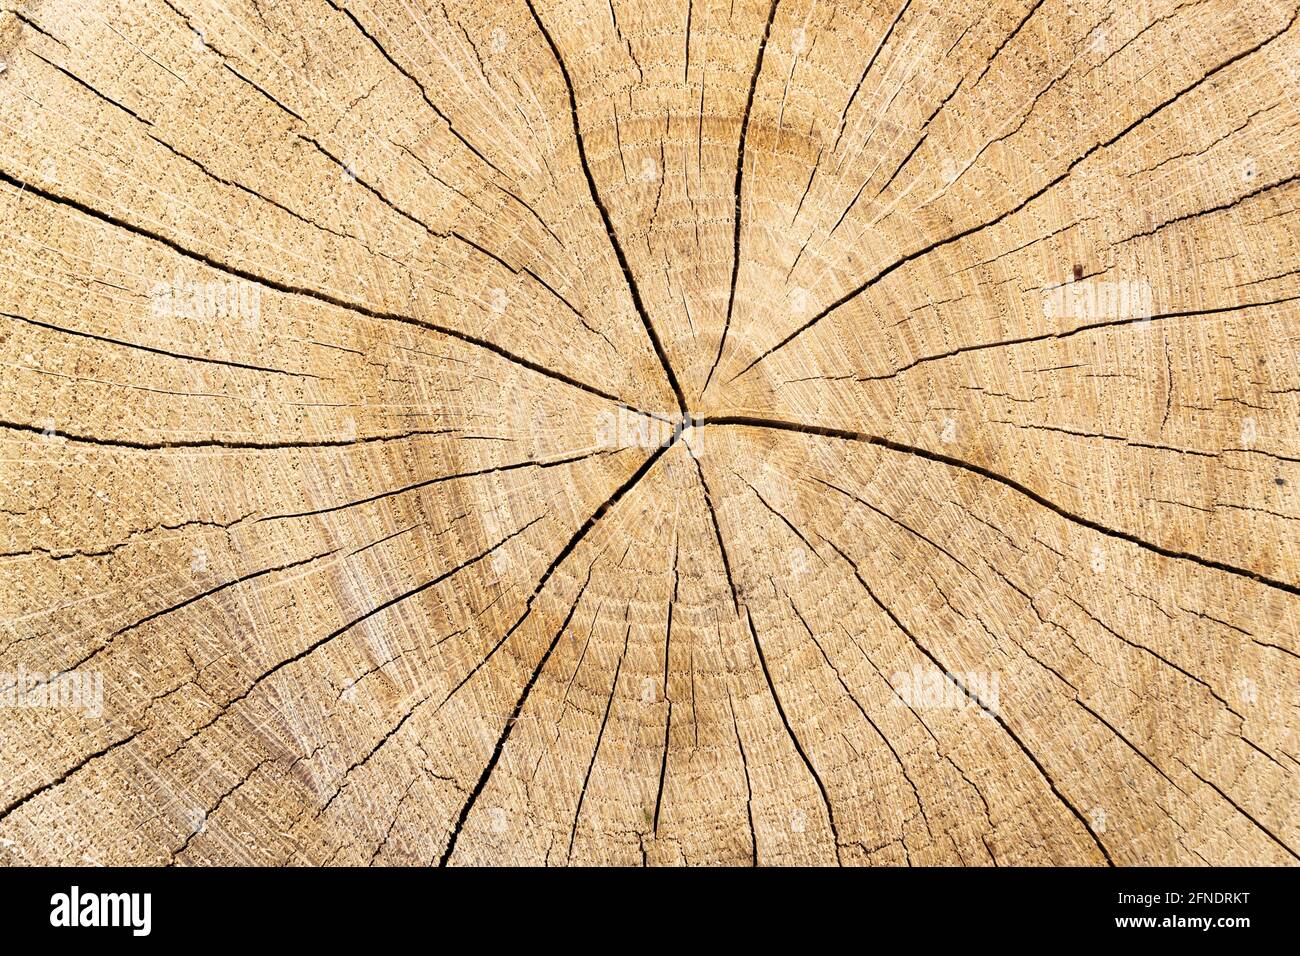 Querschnitt des Holzes in Nahaufnahme. Baumstamm mit Baumringen und Rissen Stockfoto